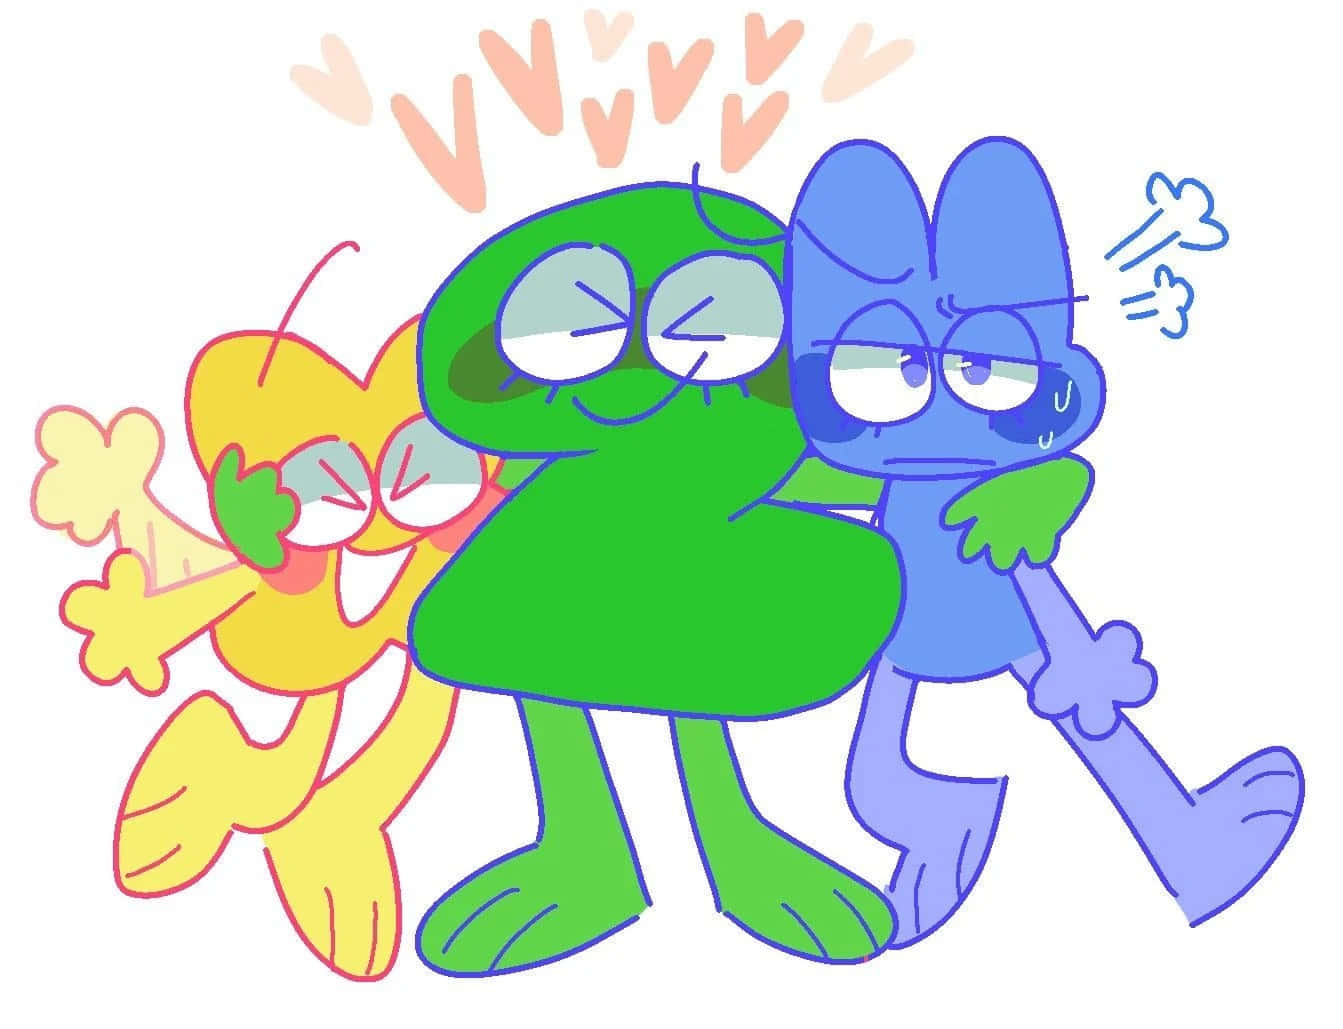 A Cartoon Of Three Cartoon Characters Hugging